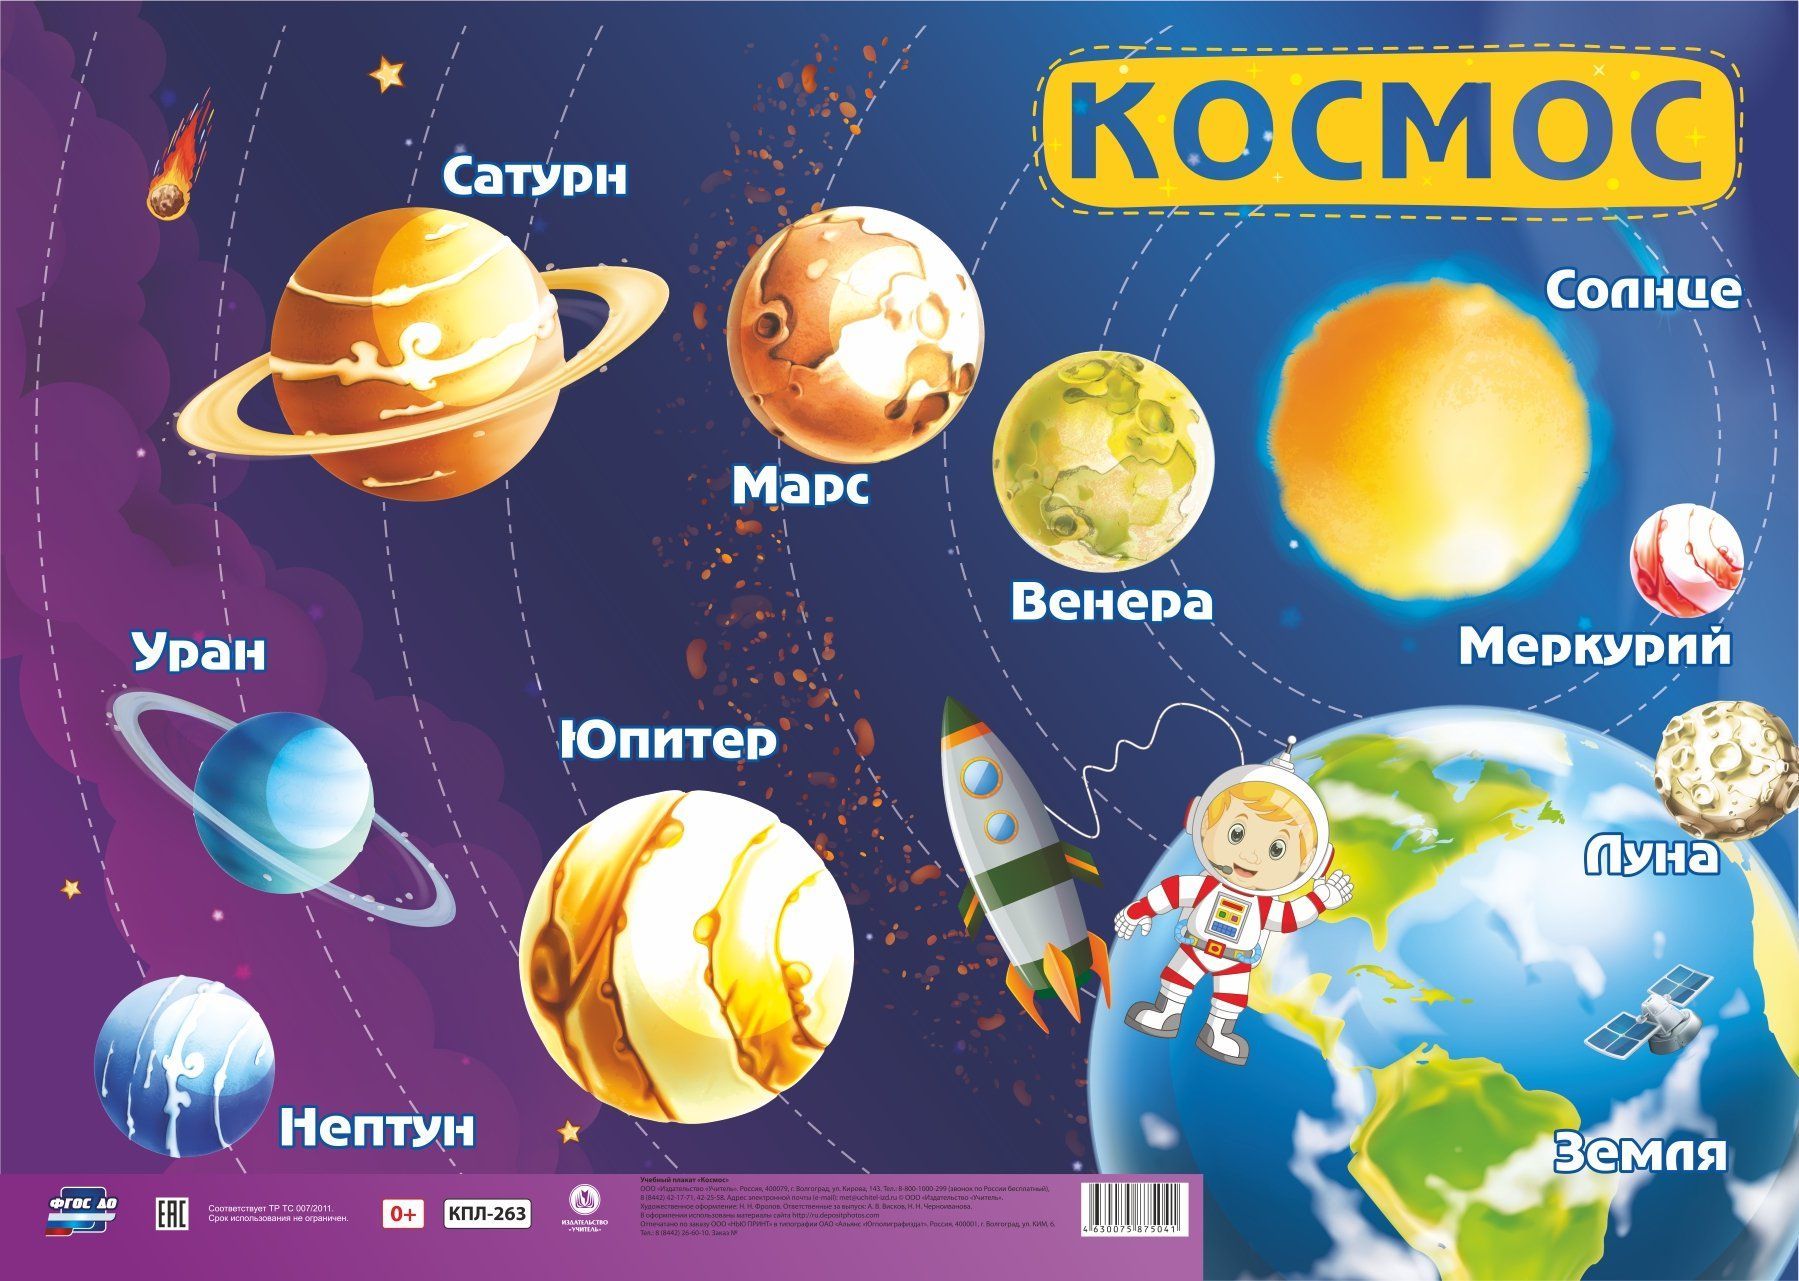 Названия про космос для детей